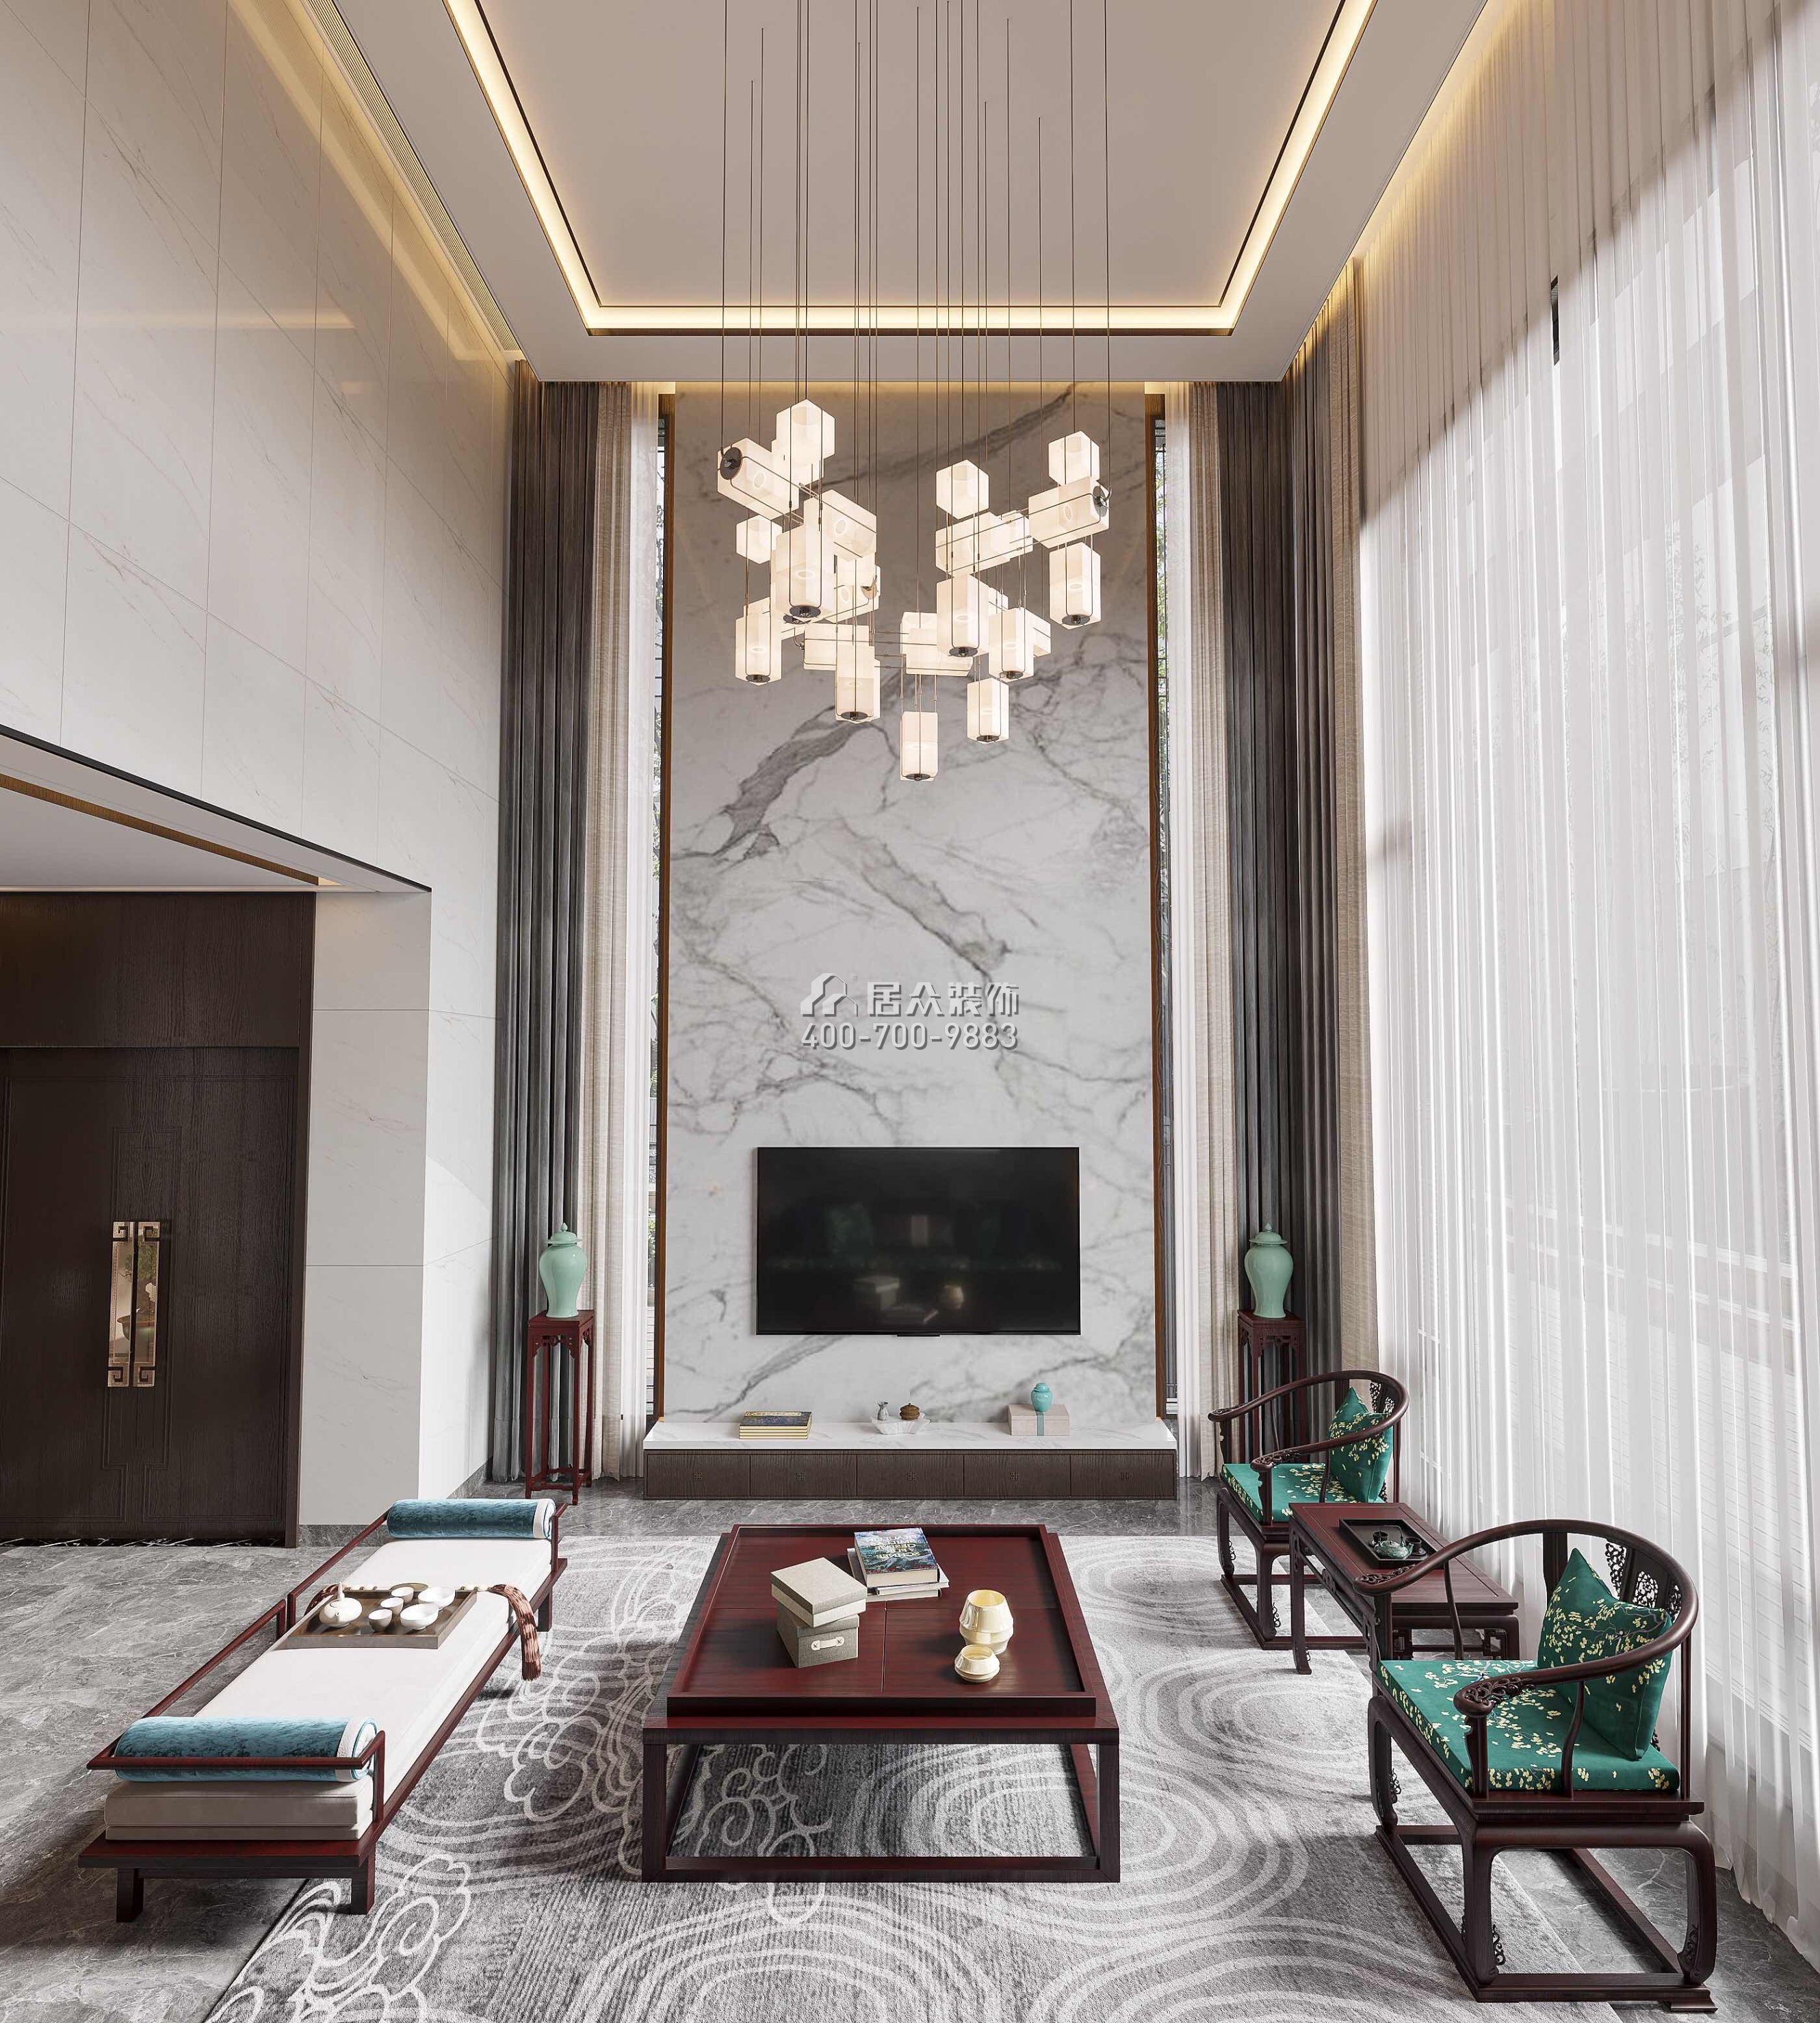 新世纪颐龙湾380平方米中式风格别墅户型客厅装修效果图